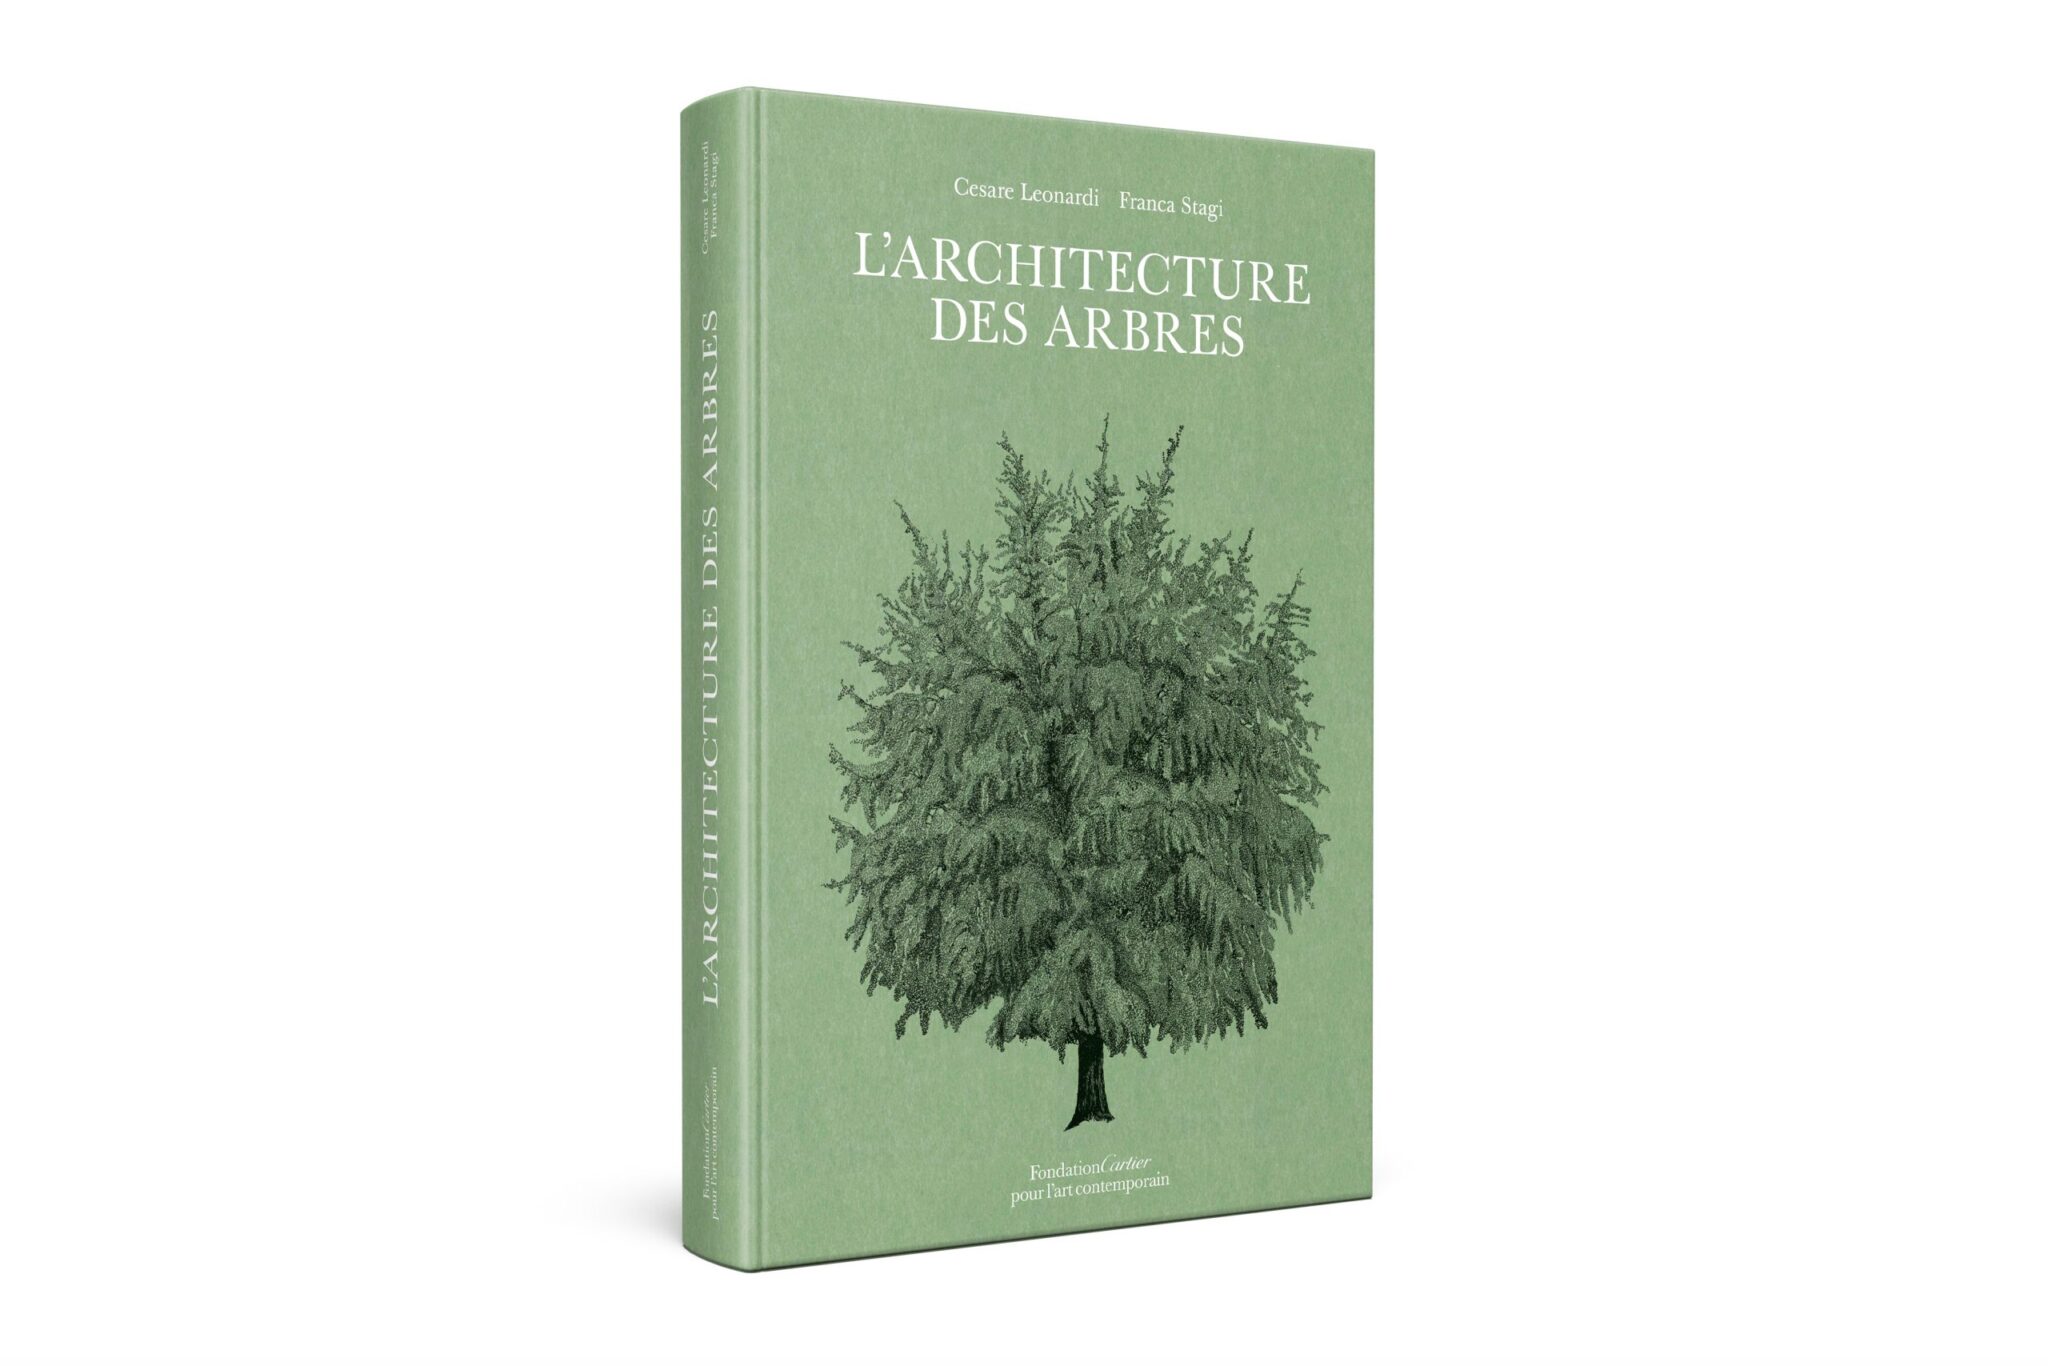 L'Architecture des arbres